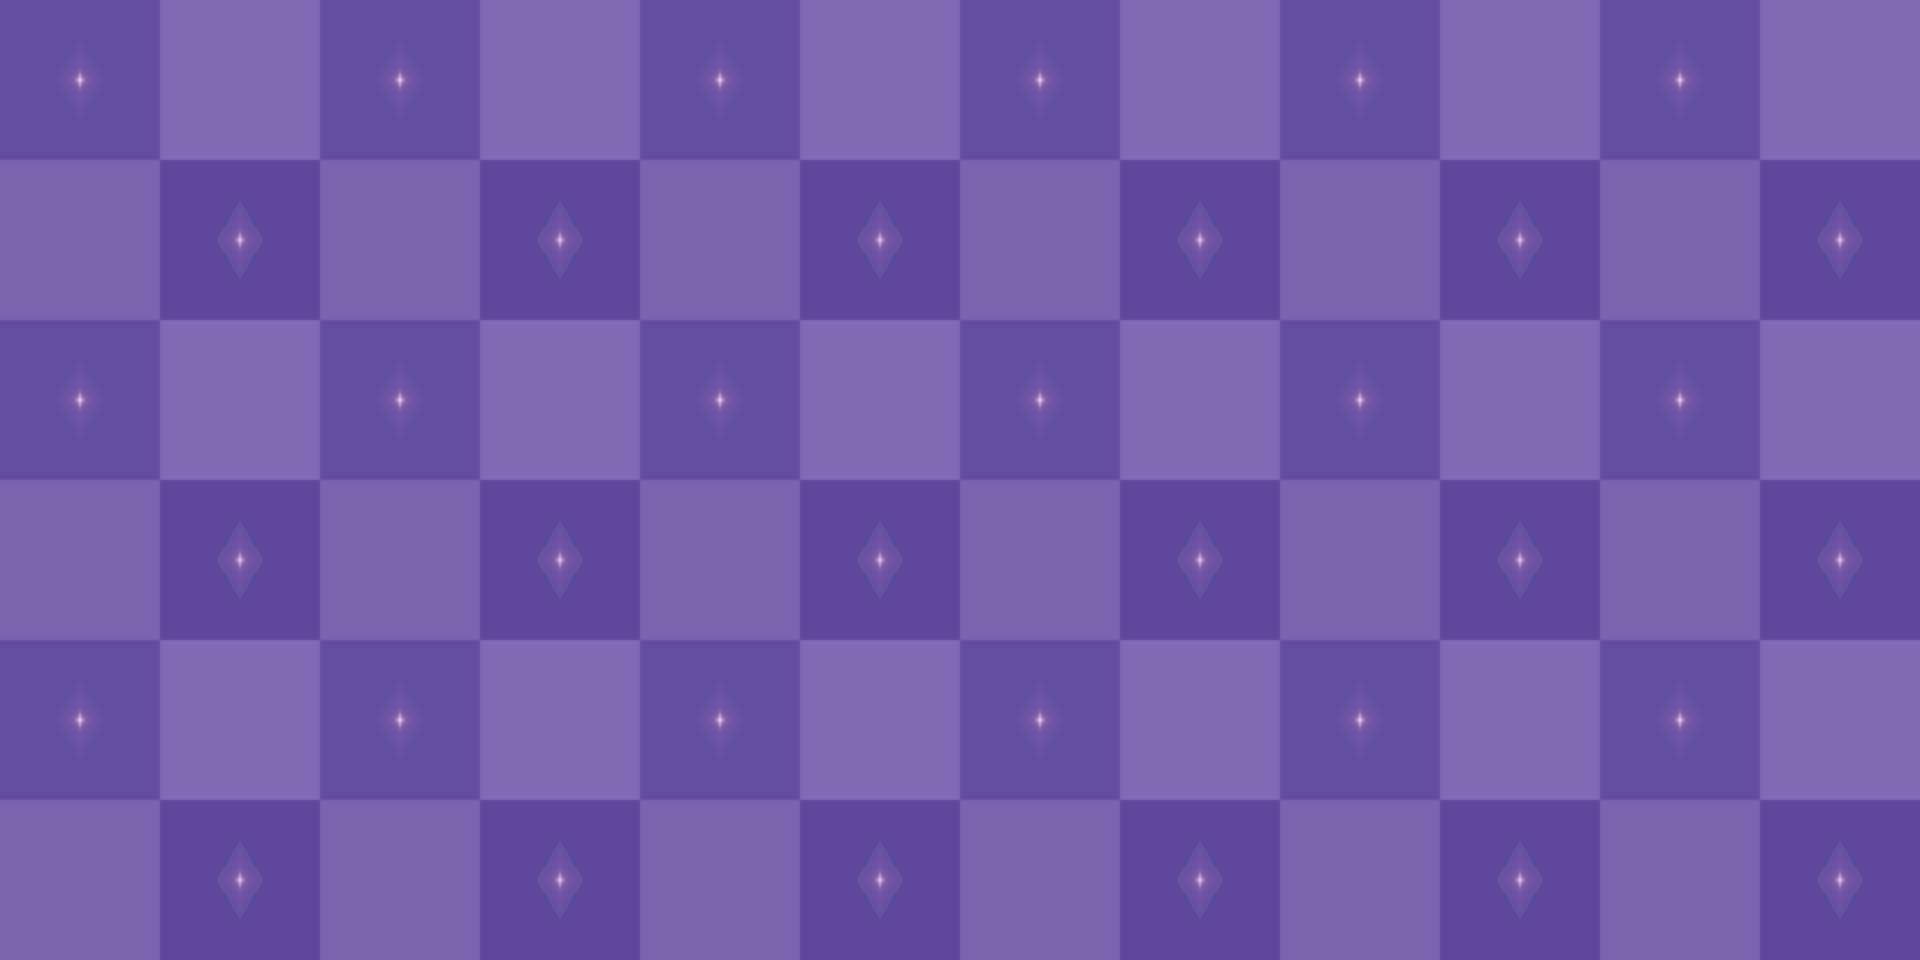 tecido têxtil xadrez sem costura padrão de bolinhas violeta fundos abstratos textura papel de parede ilustração vetorial vetor